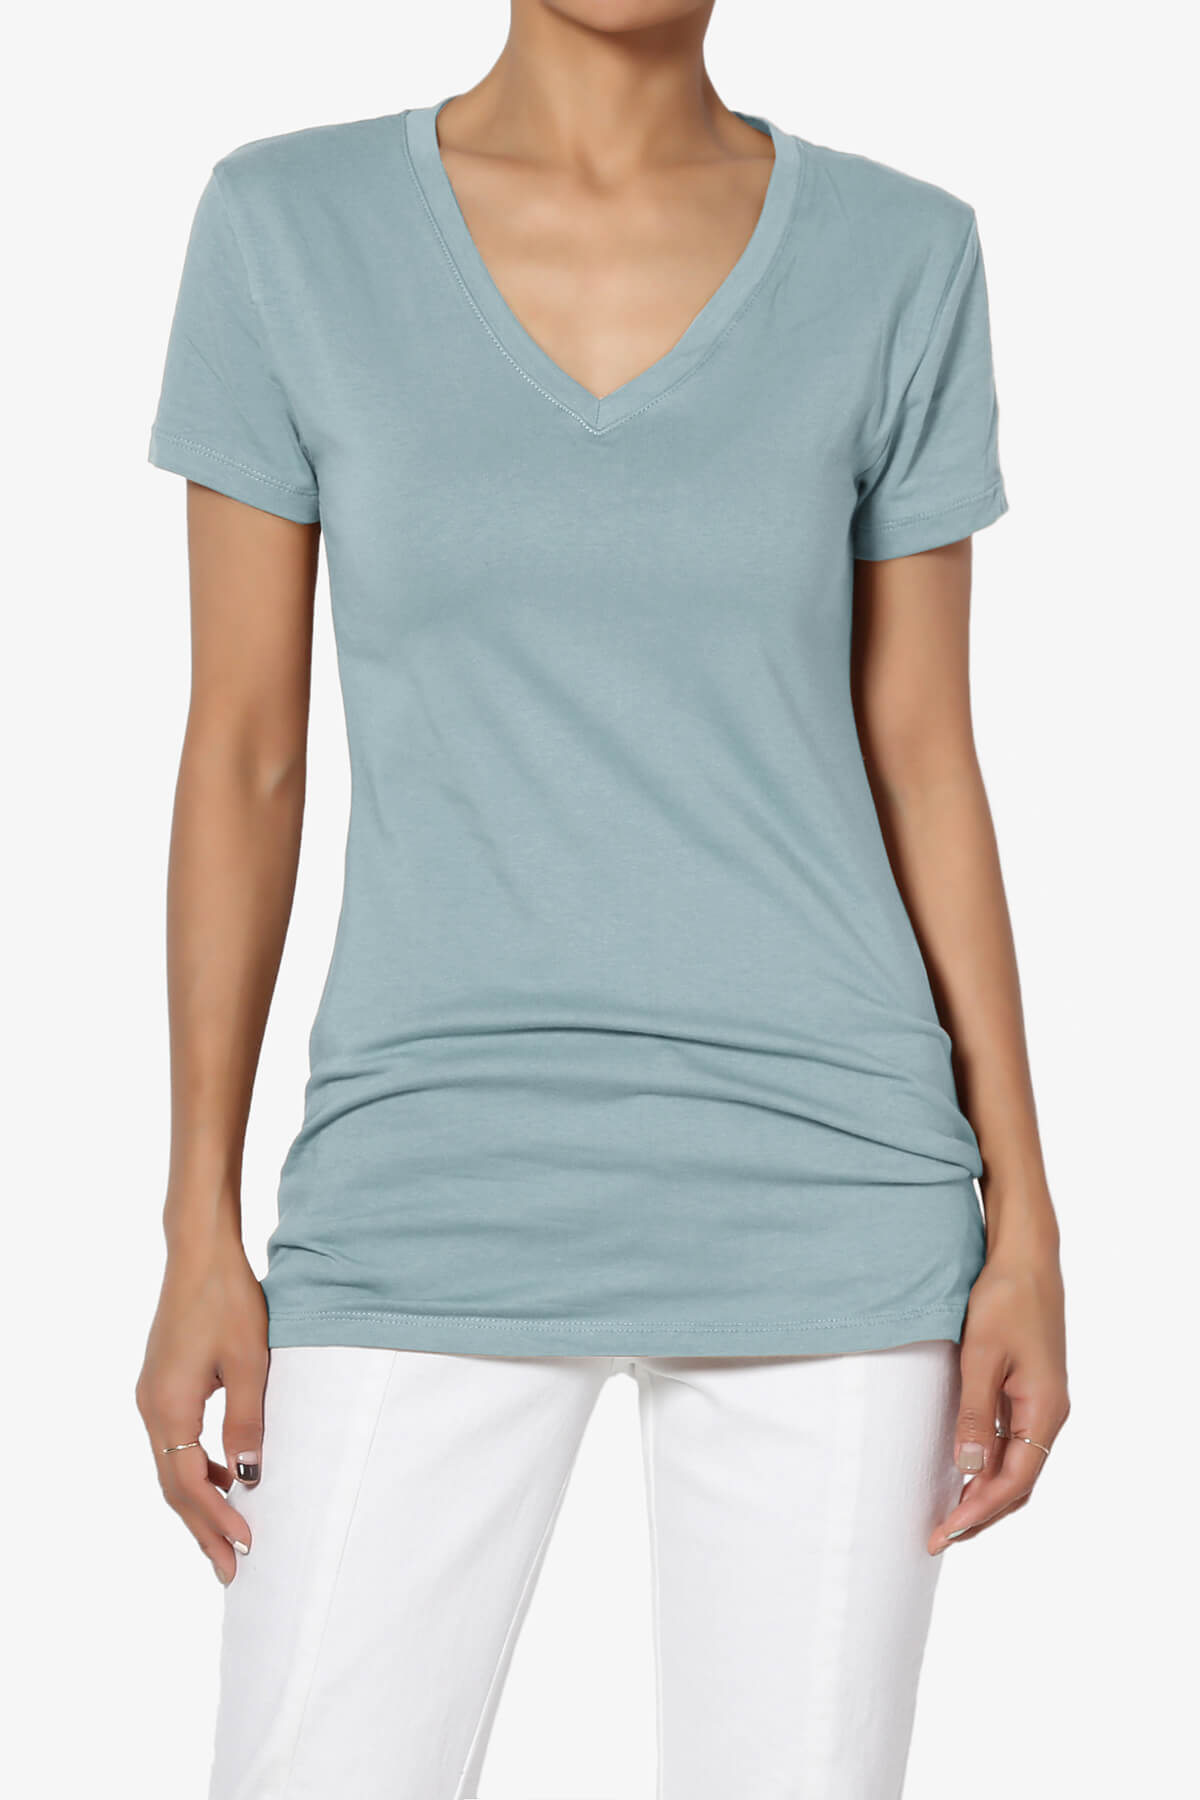 Candela V-Neck Short Sleeve T-Shirts DUSTY BLUE_1